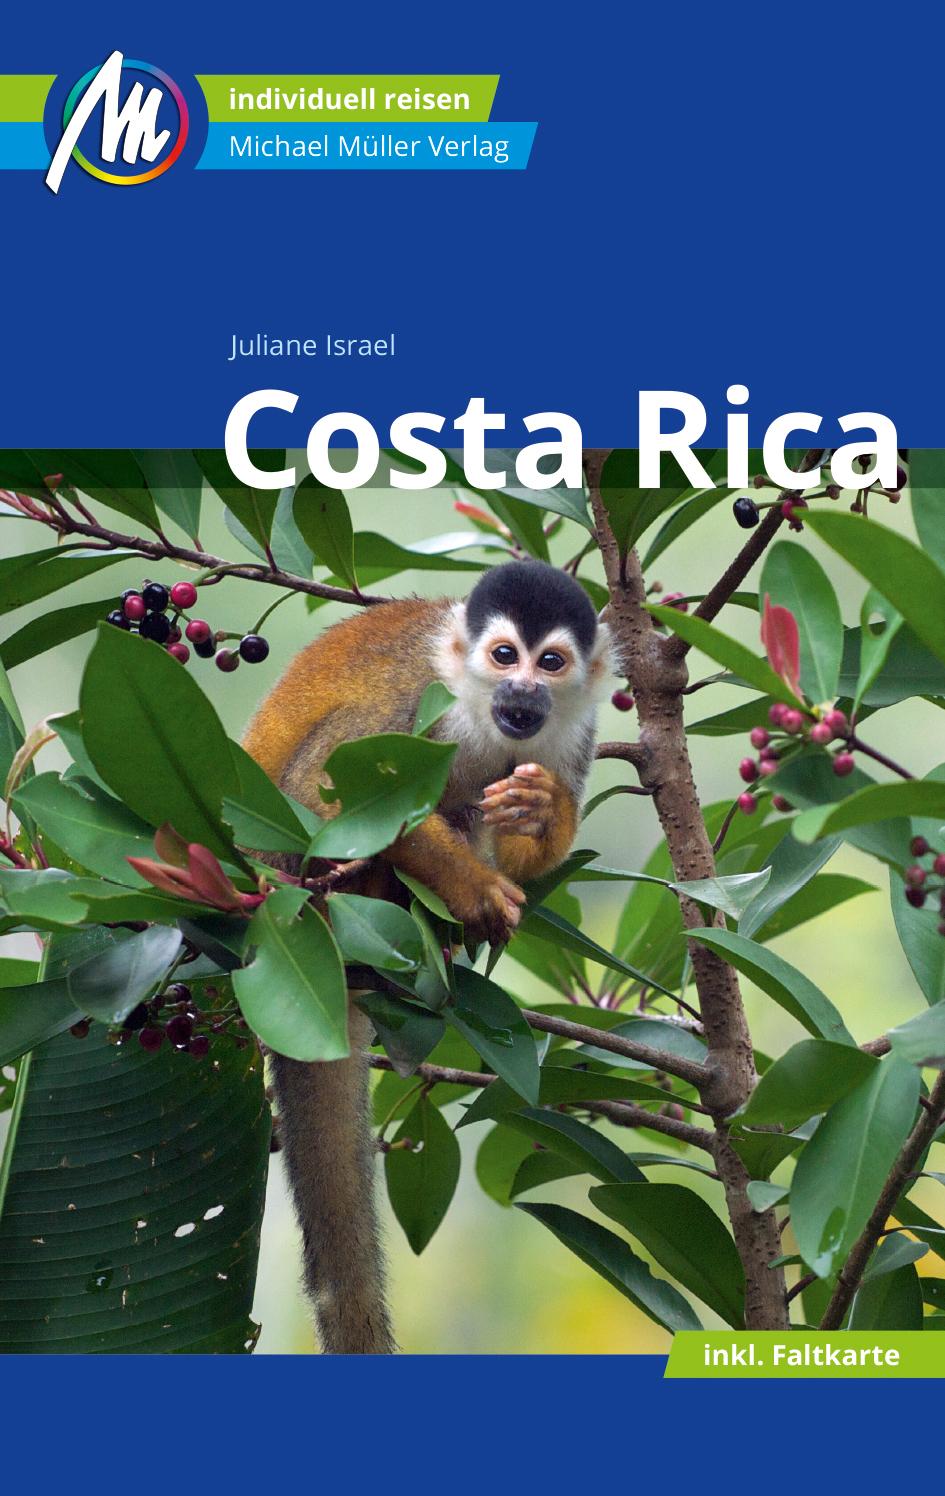 Costa Rica Reiseführer Michael Müller Verlag Individuell reisen mit vielen praktischen Tipps